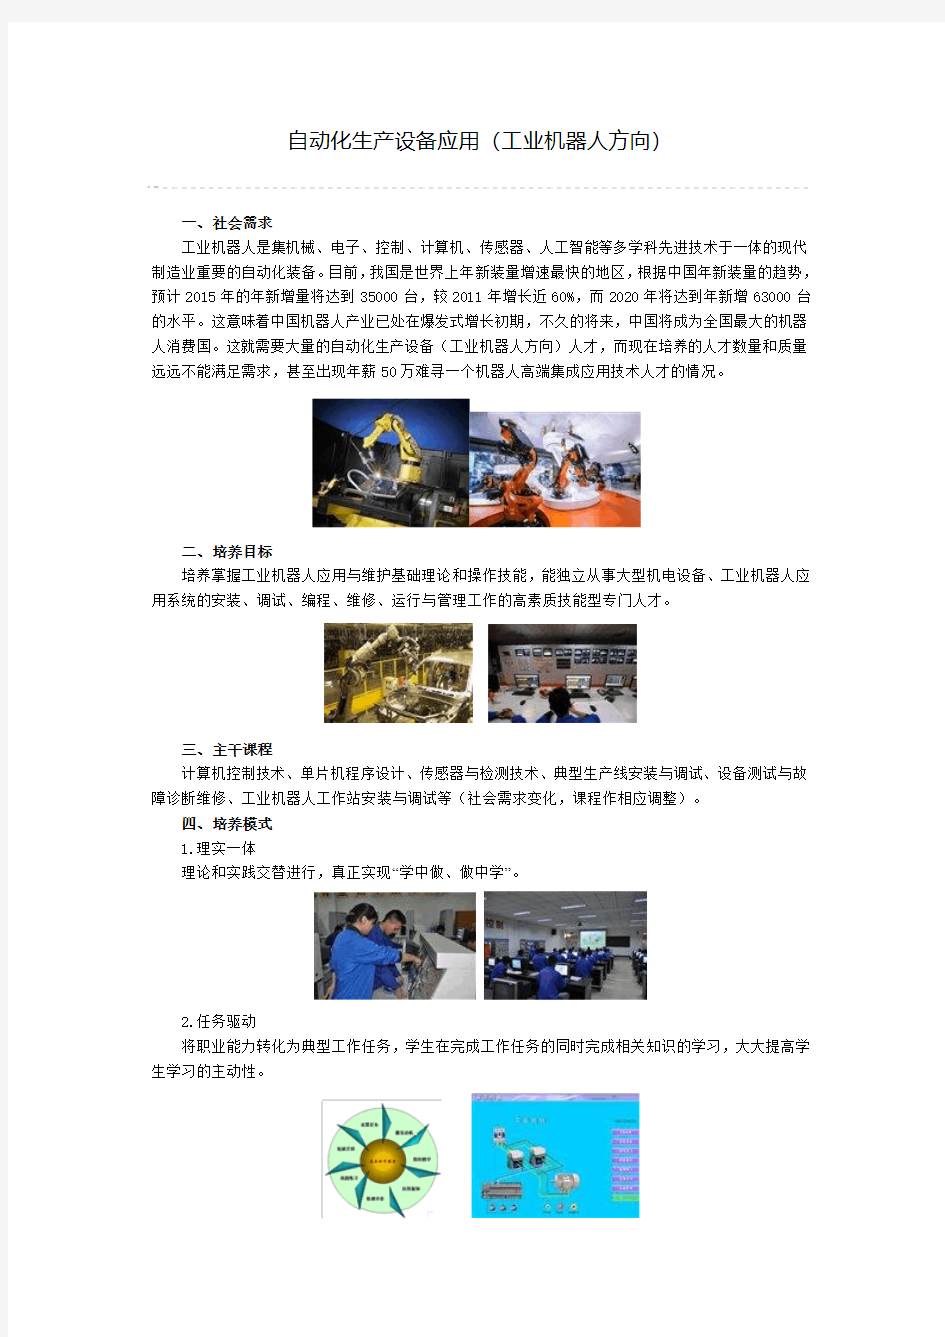 重庆科创职业学院自动化生产设备应用专业介绍